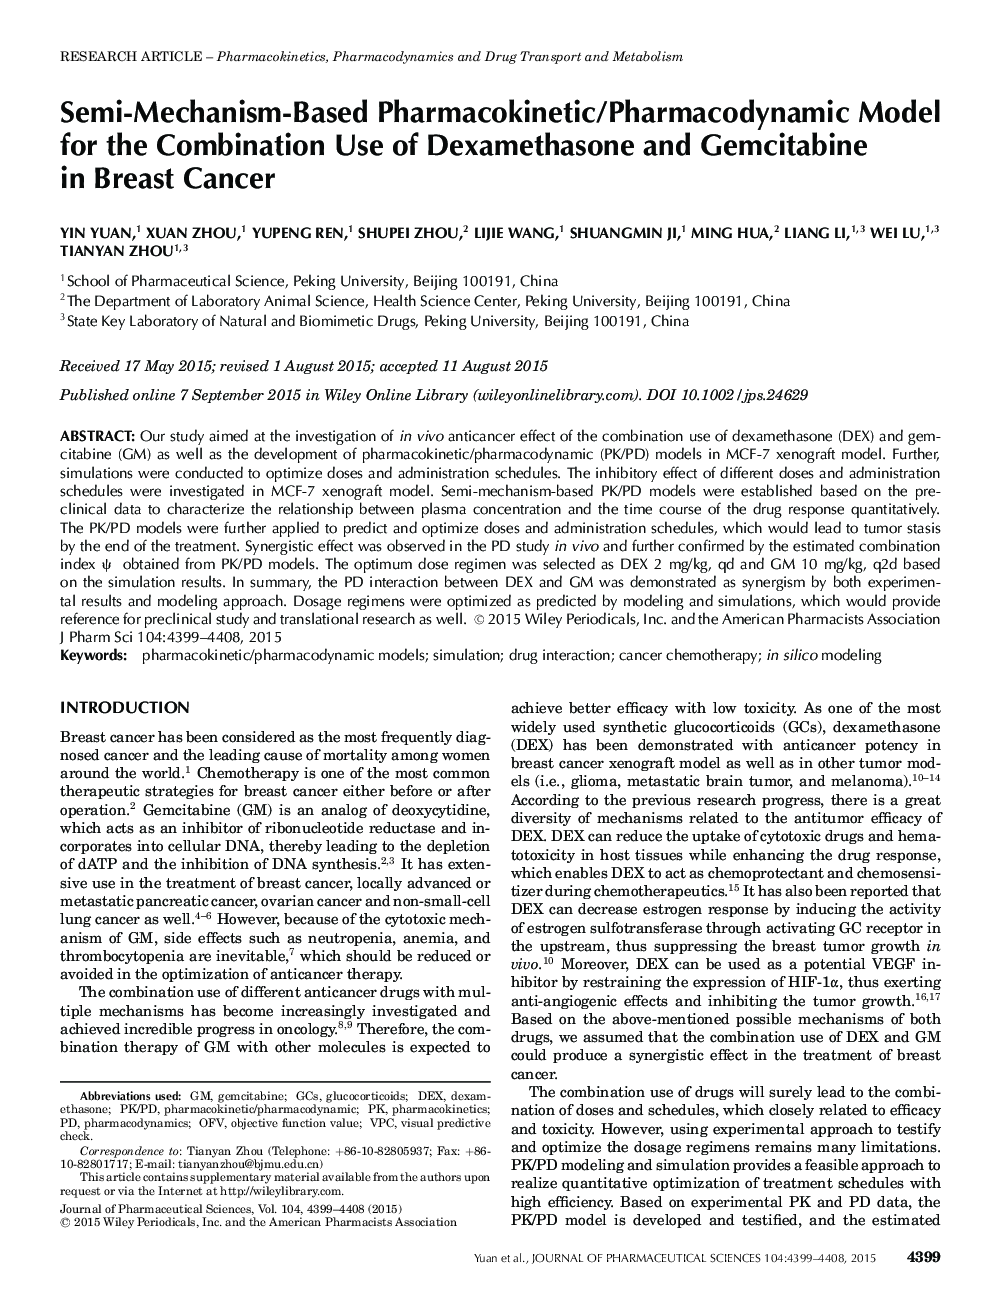 مدل فارماکوکینتیک / فارماکودینامیک مبتنی بر نیمه مکانیسم برای استفاده ترکیبی از دگزامتازون و گمسیتابین در سرطان پستان 